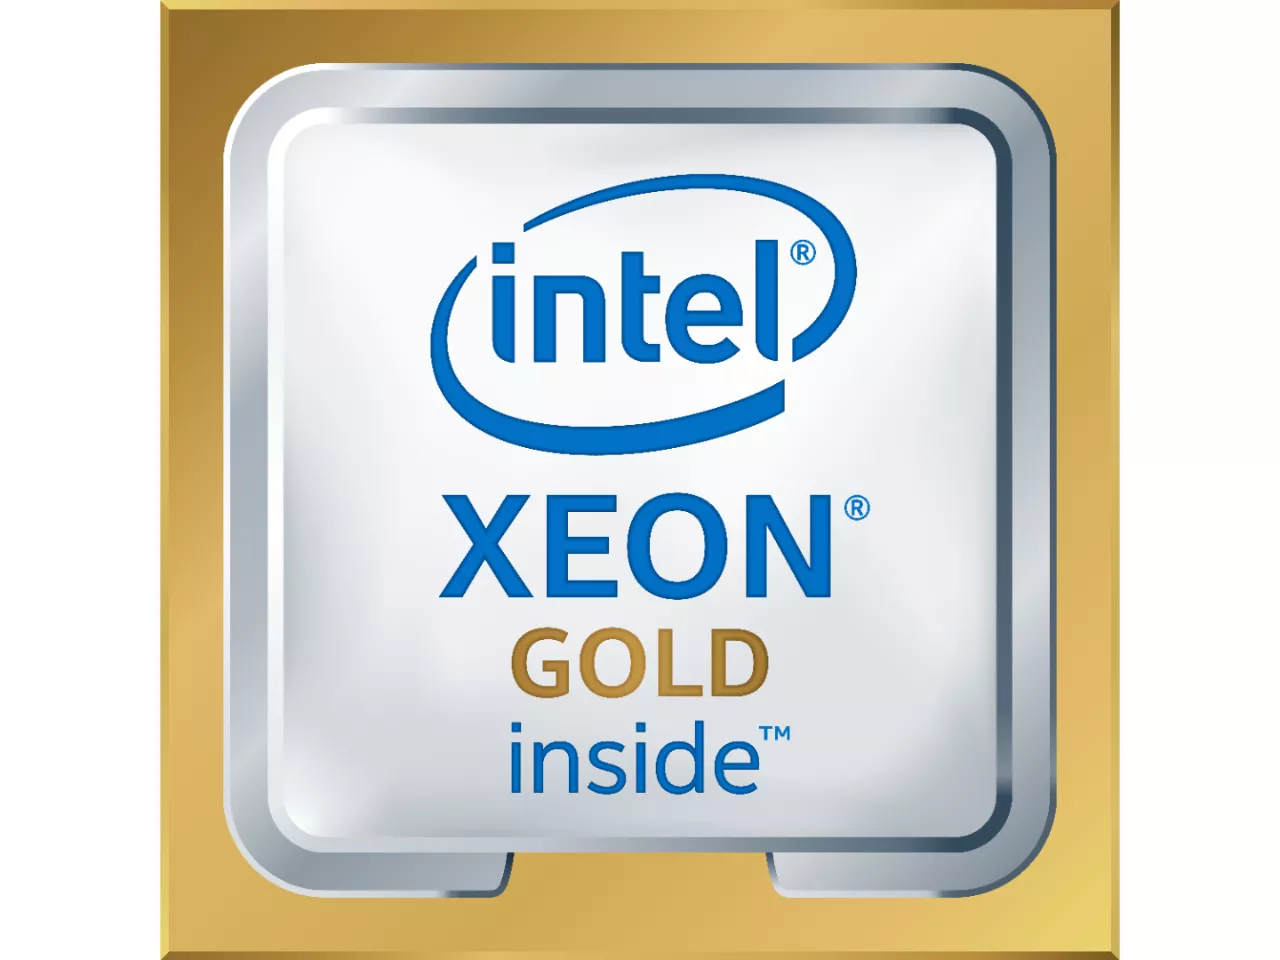 Achat Intel Xeon 6240R et autres produits de la marque Intel